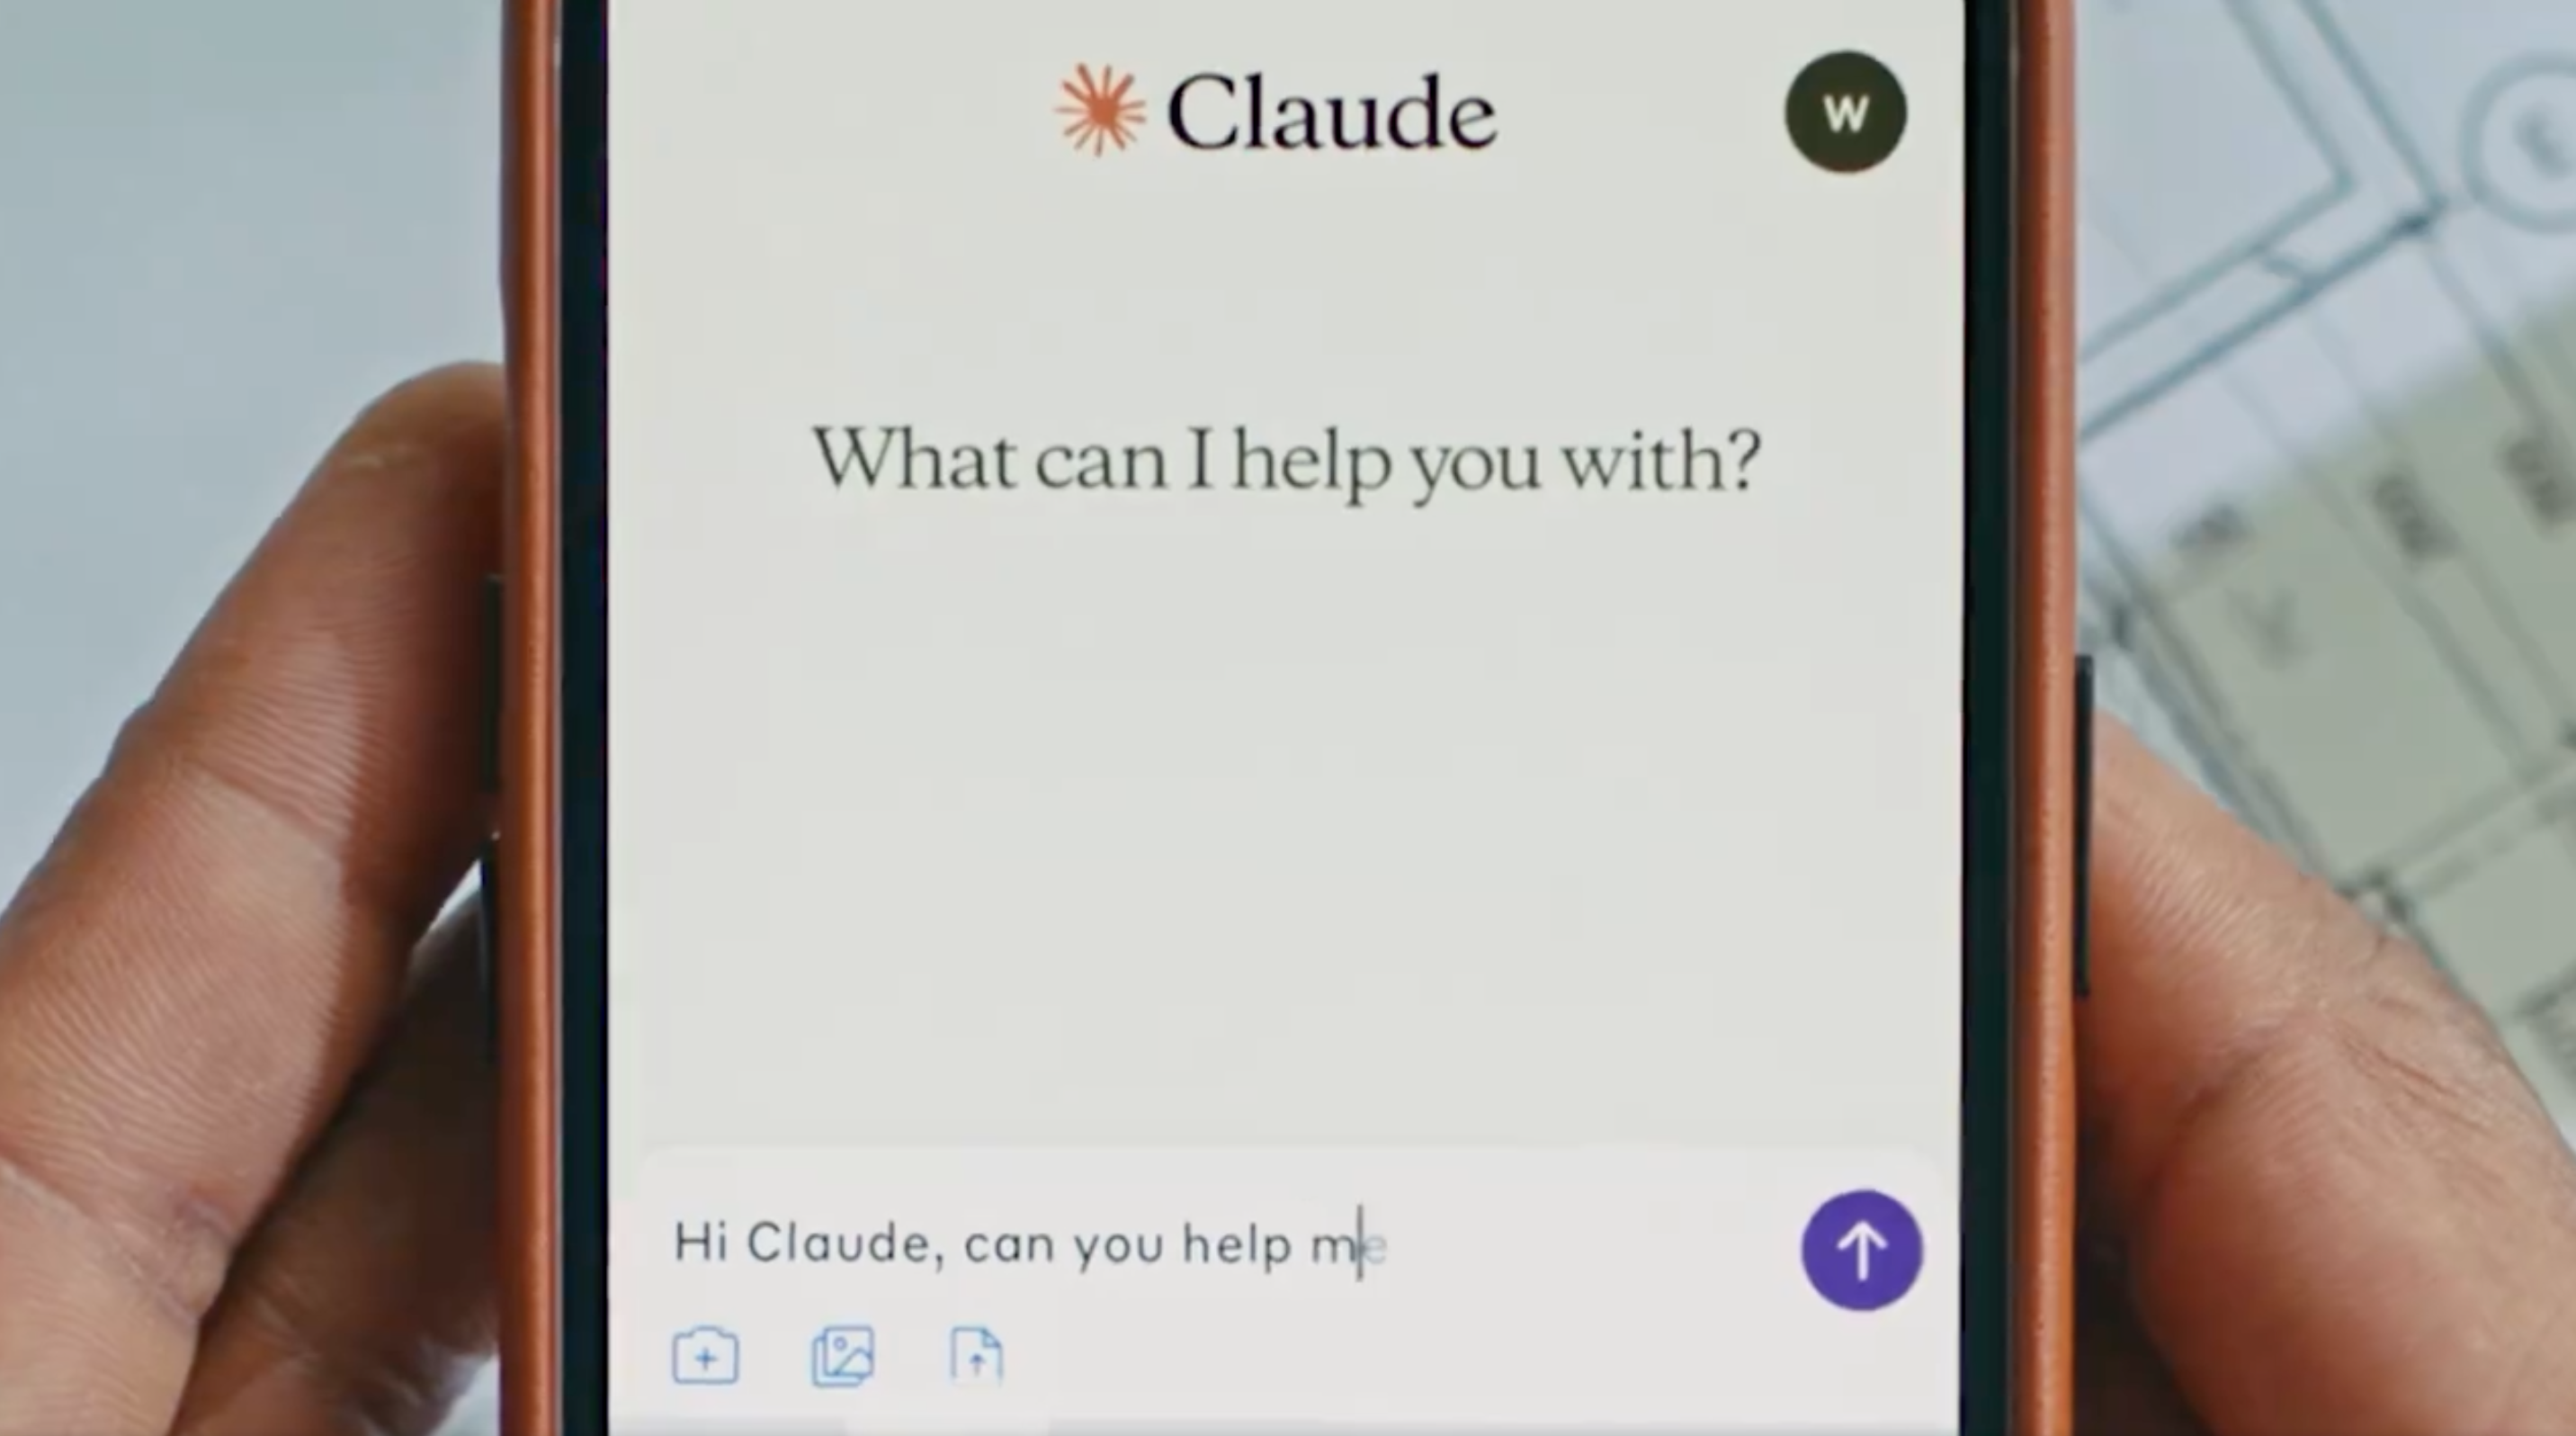 Anthropic publie son appli mobile Claude : tout ce qu'on peut faire avec